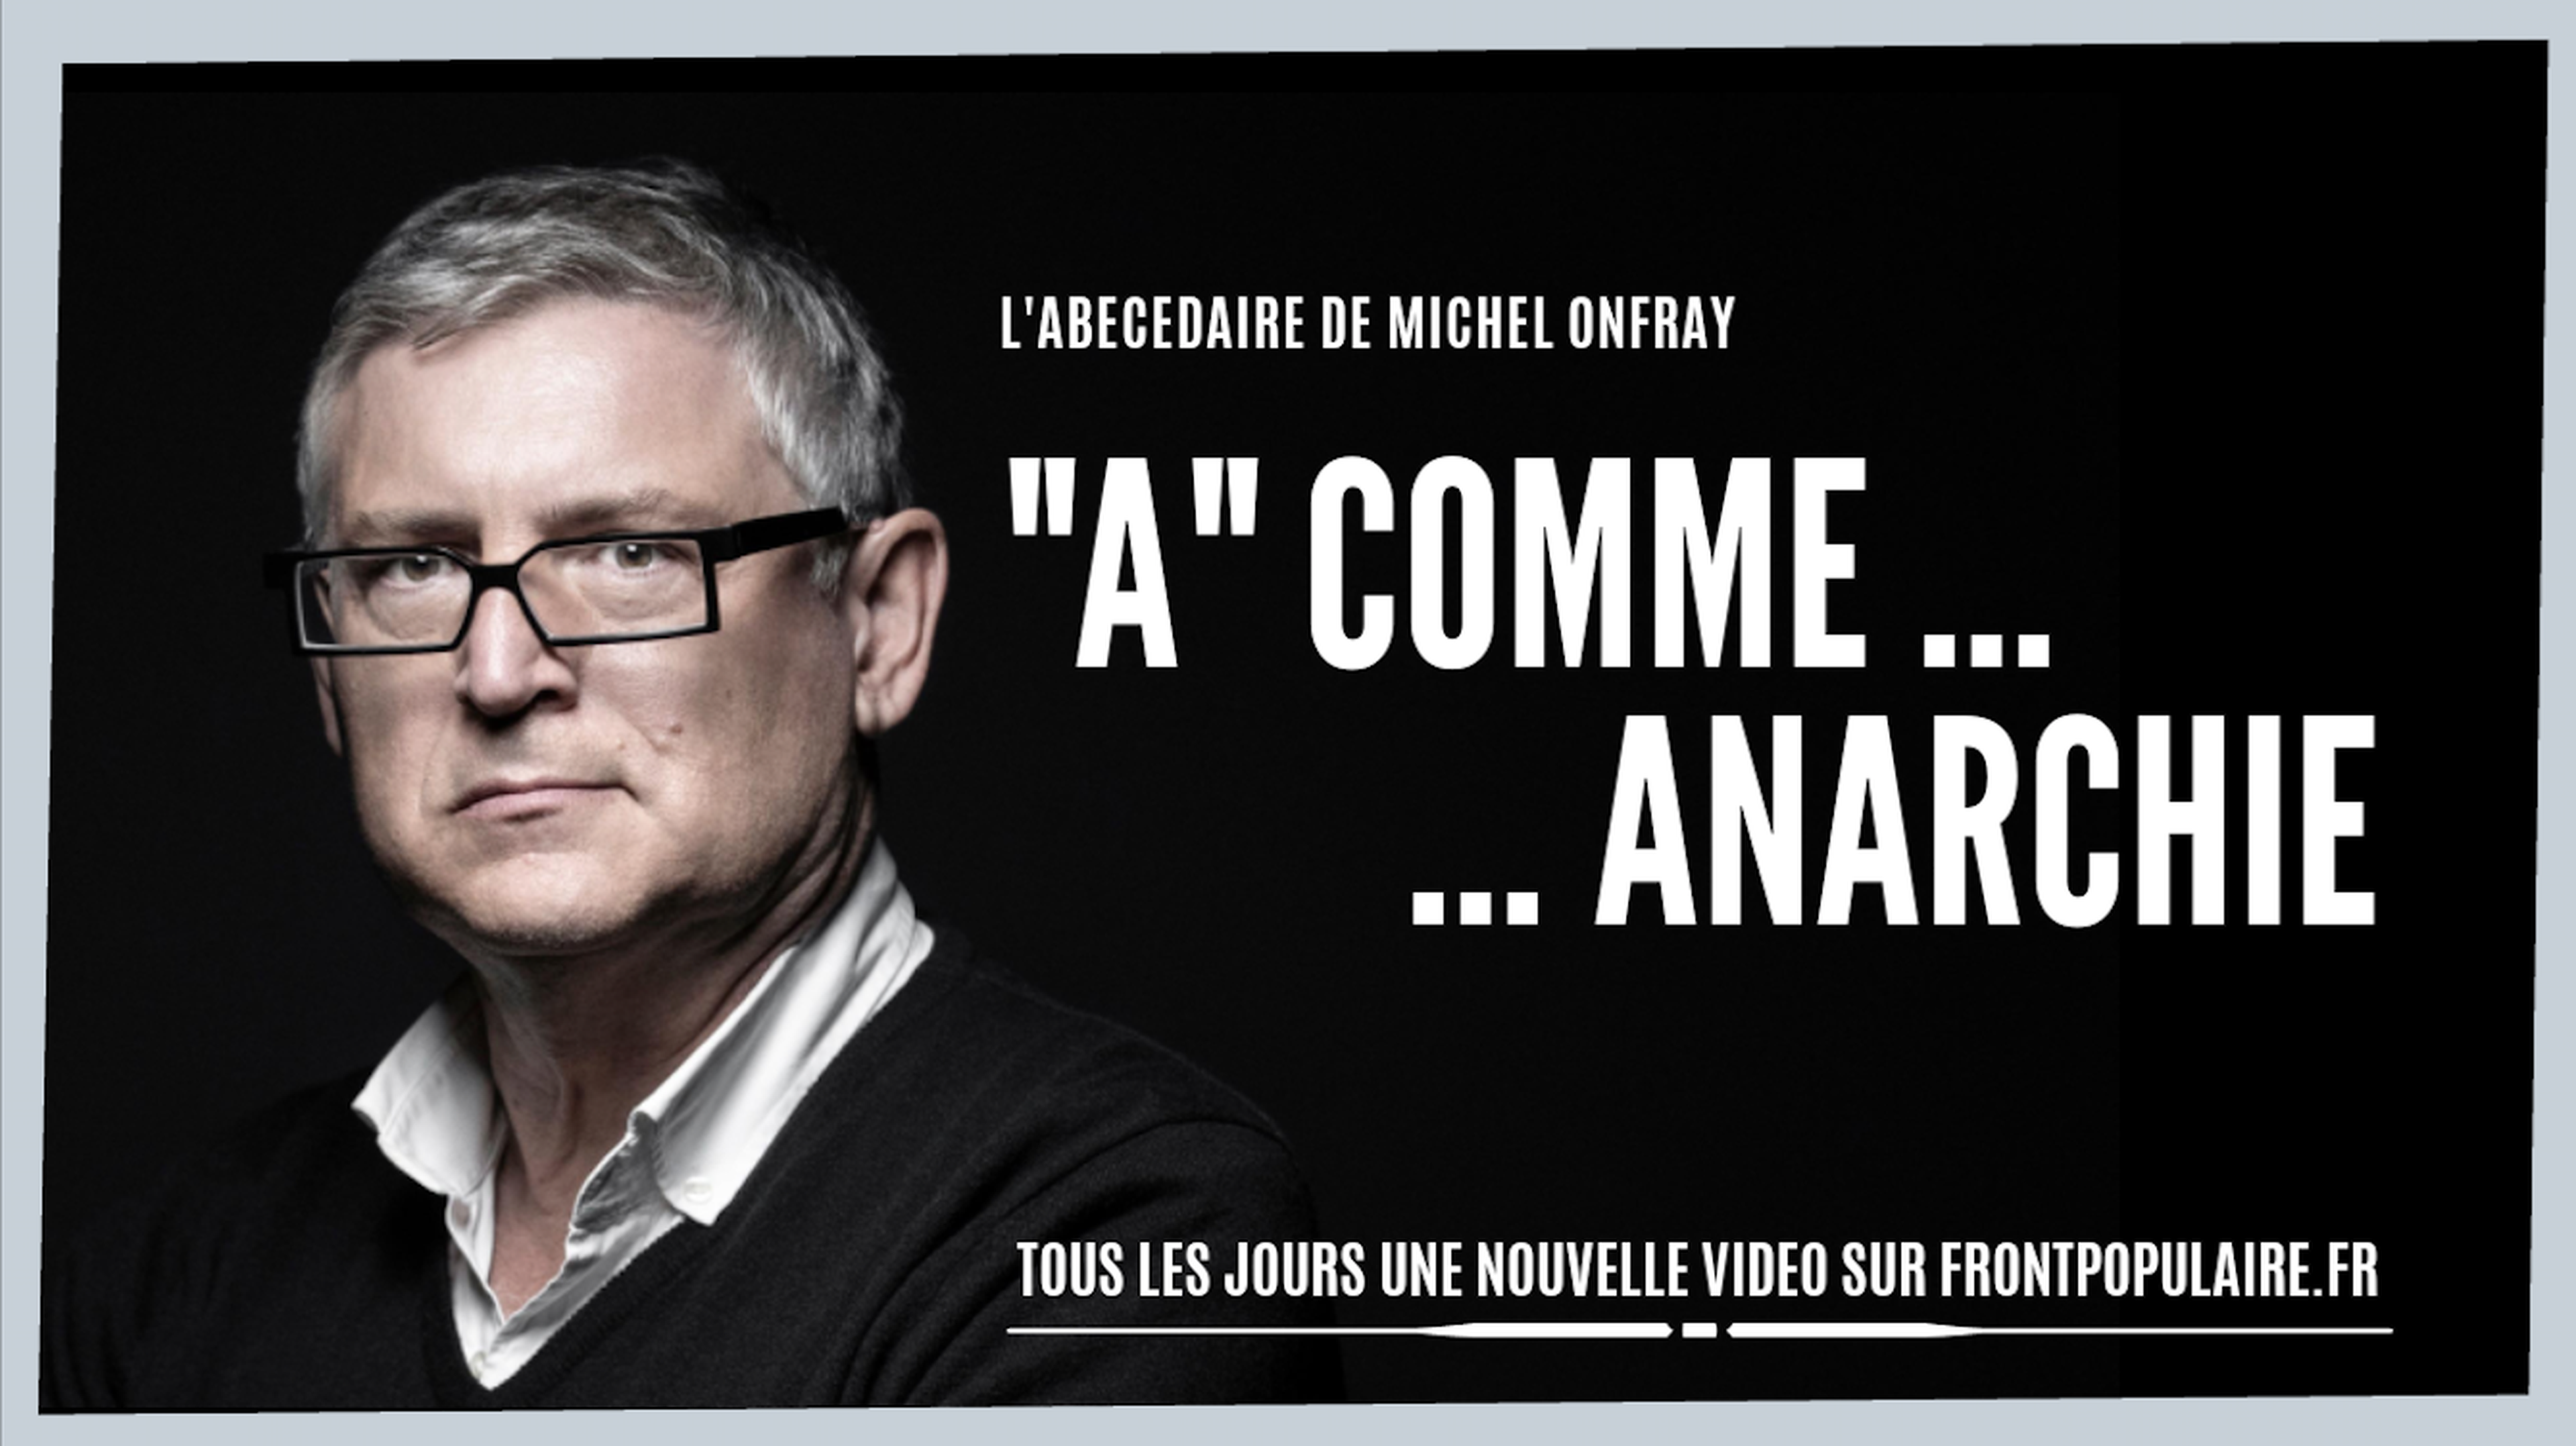 L'abécédaire de Michel Onfray: A comme Anarchie